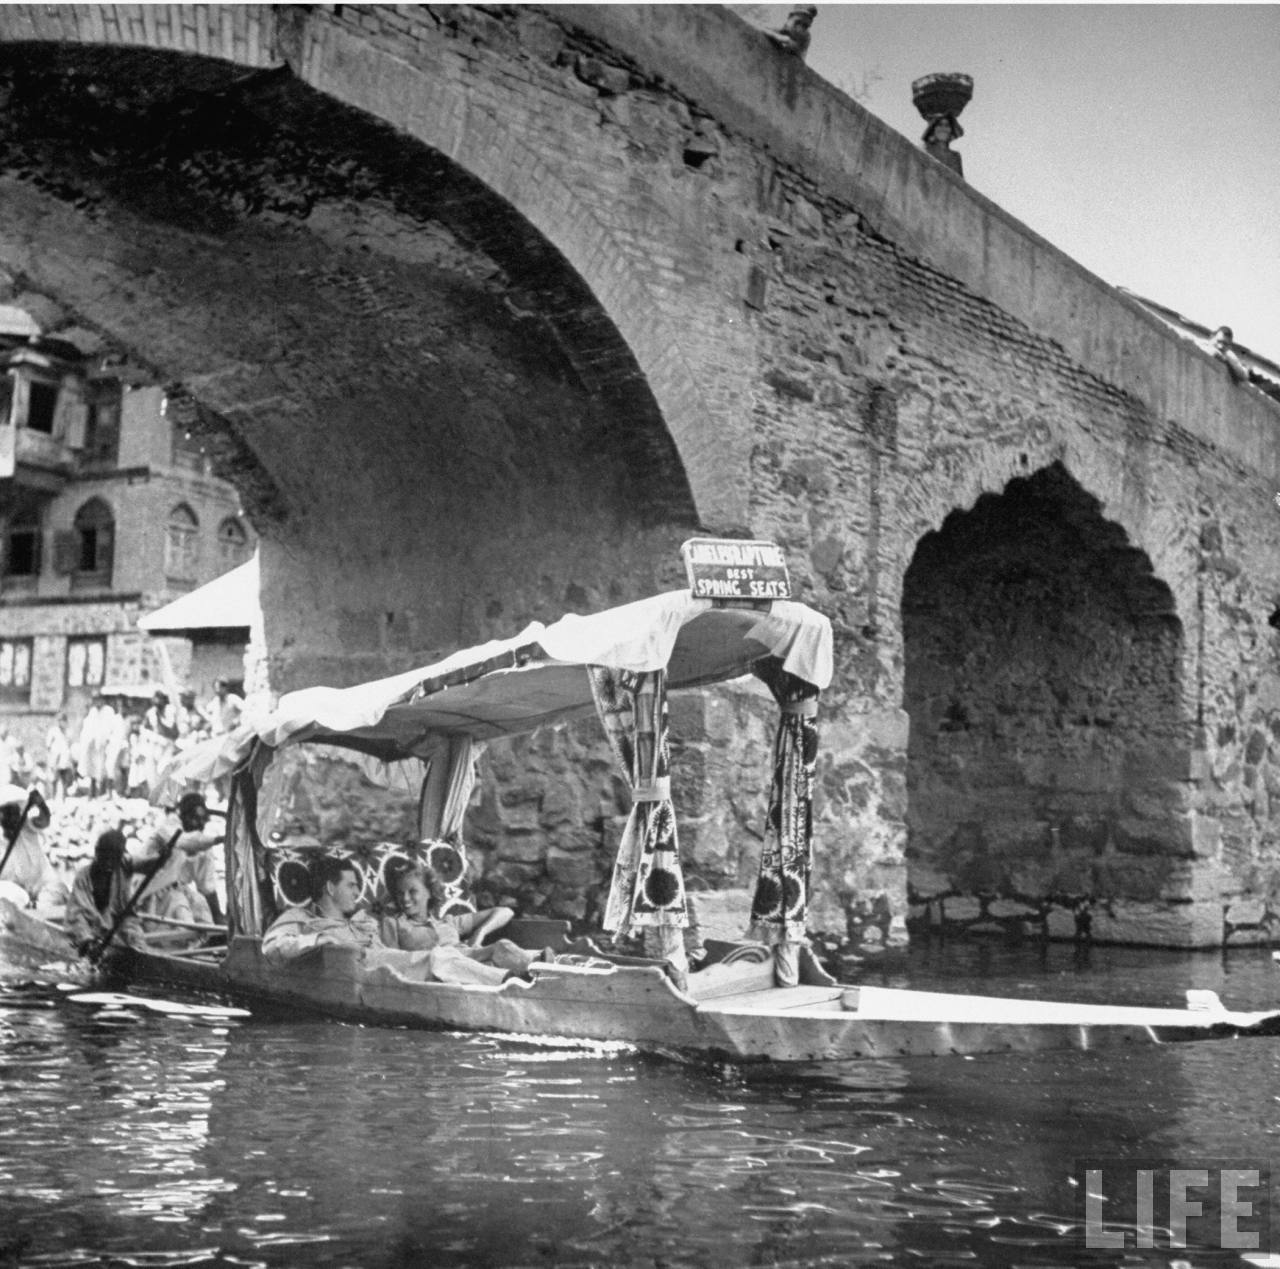  boat ride in Kashmir - 1943